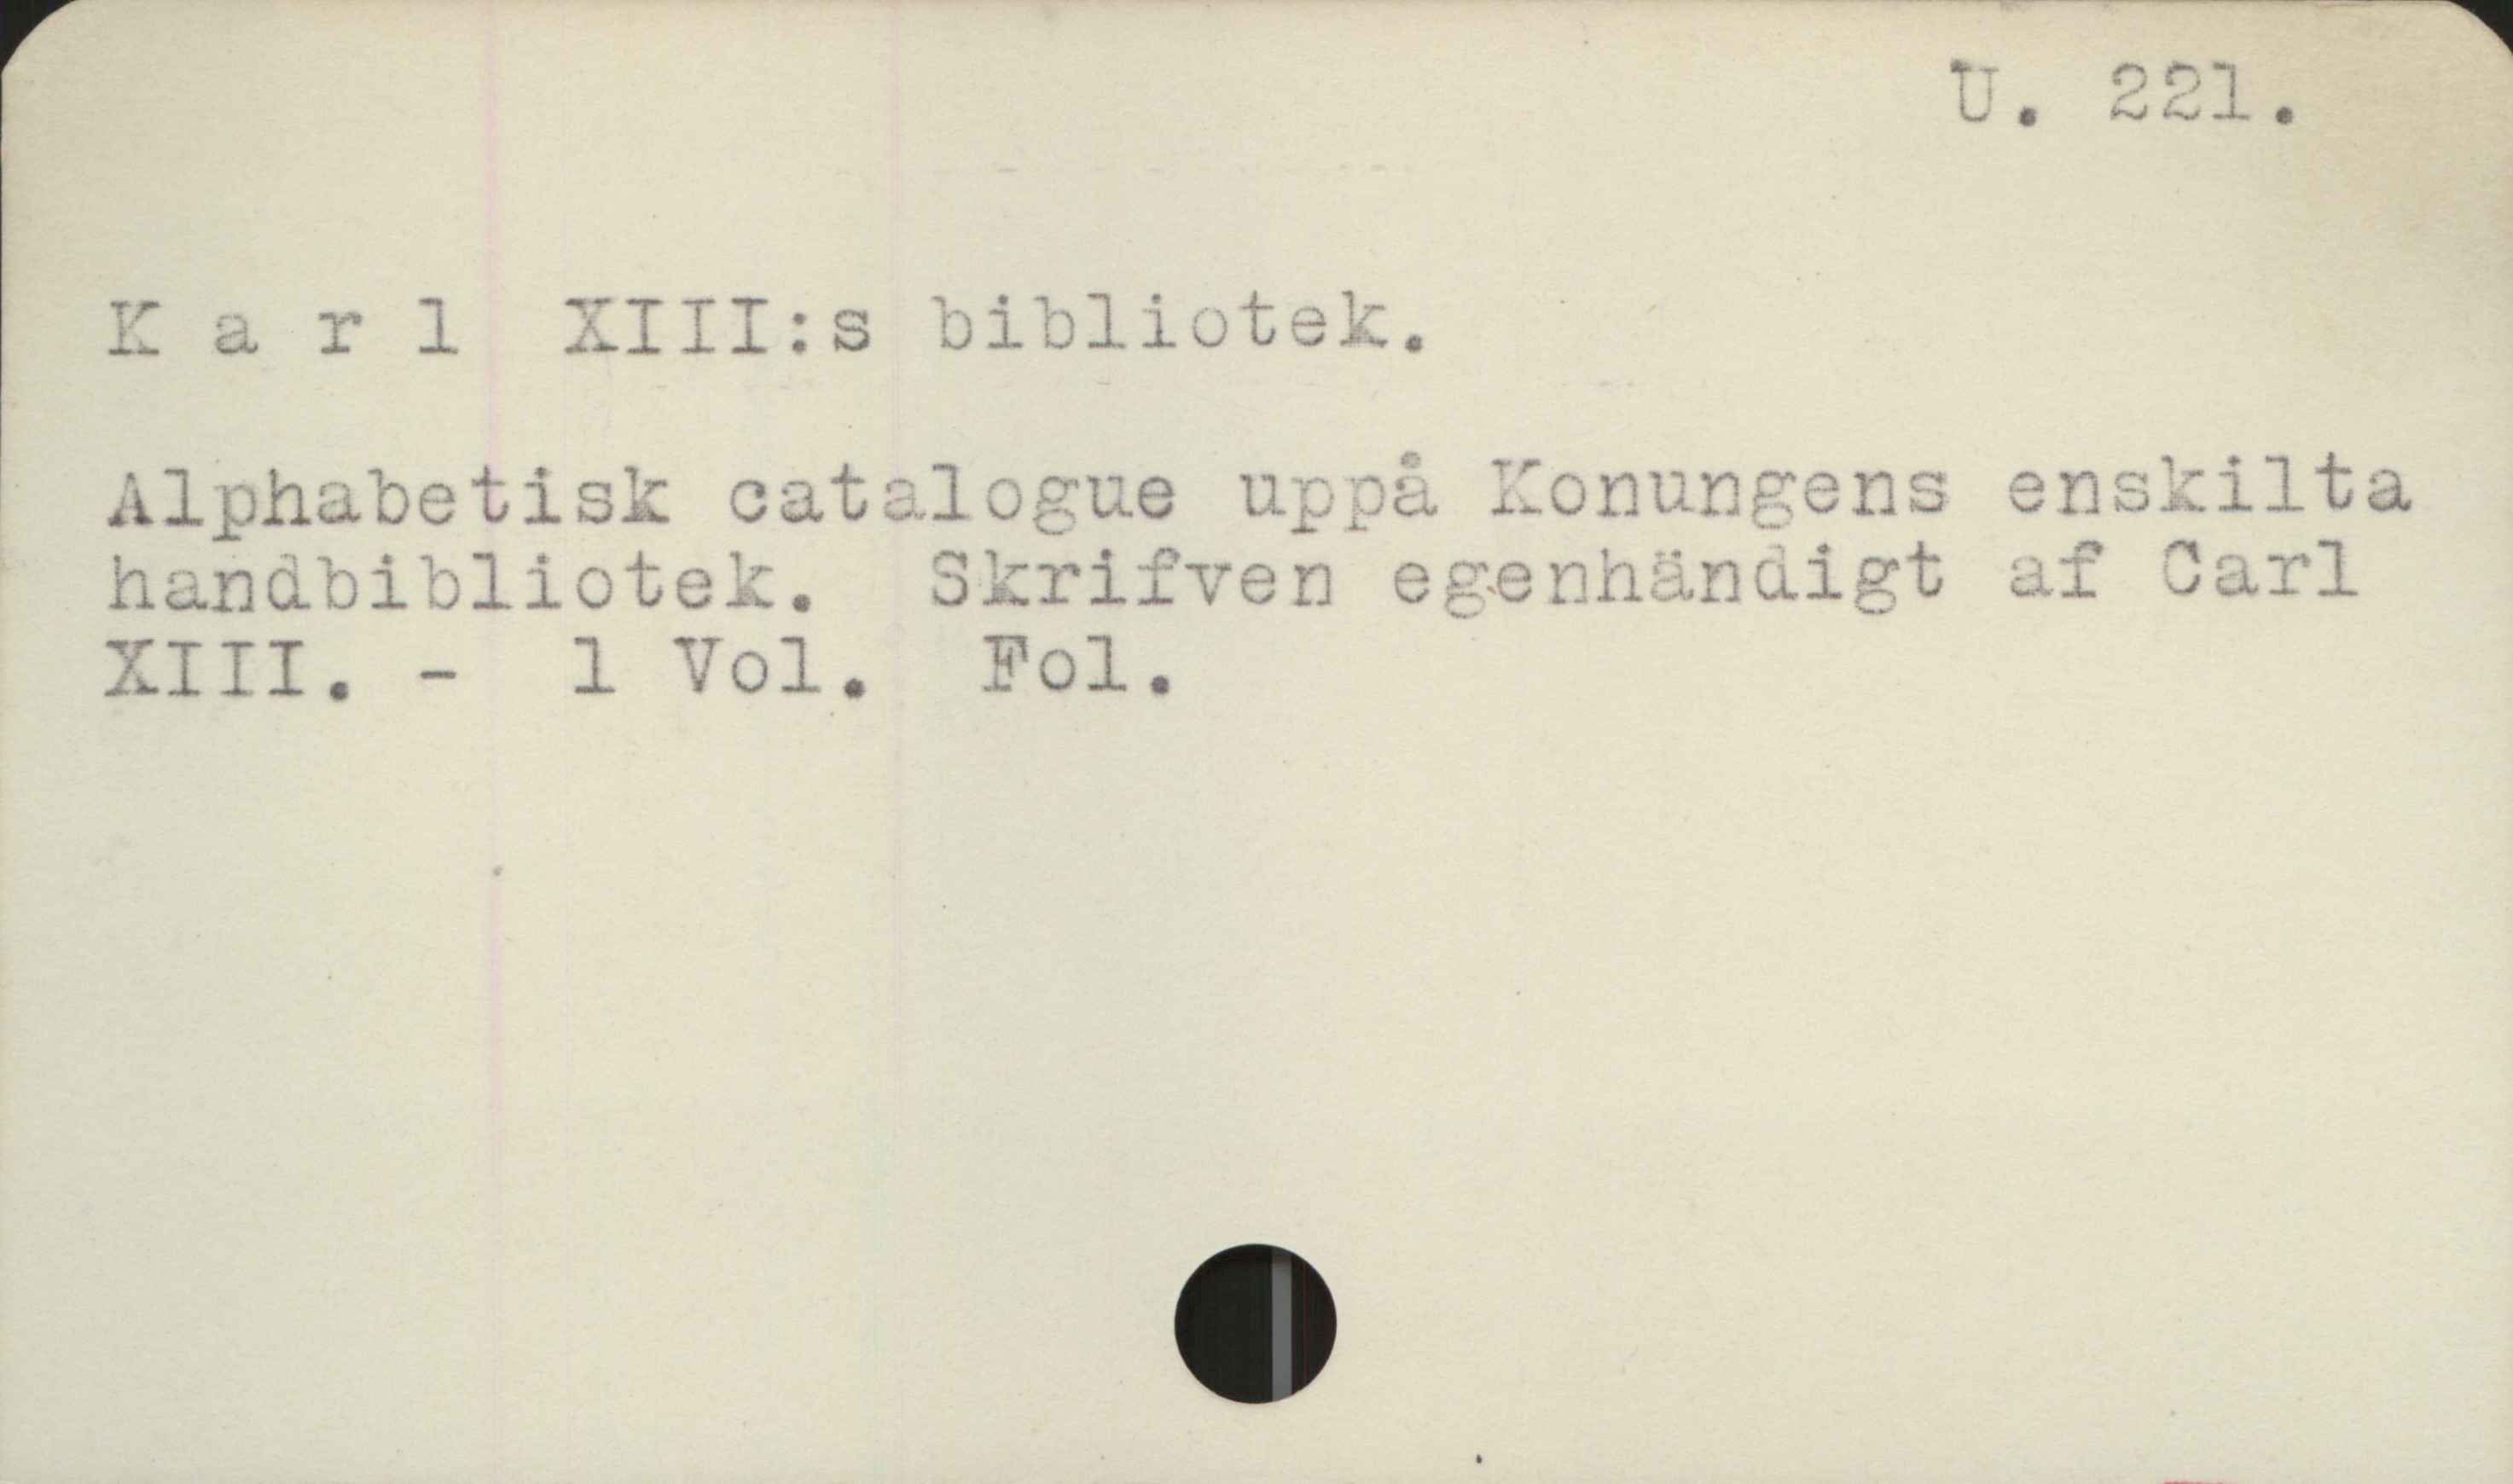 Karl XIII:s bibliotek U 221


Karl XIII:s bibliotek

Alphabetisk catalogue uppå Konungens enskilta
handbibliotek. Skrifven egenhändigt af  Carl XIII 
                                                                  - 1 Vol. Fol.